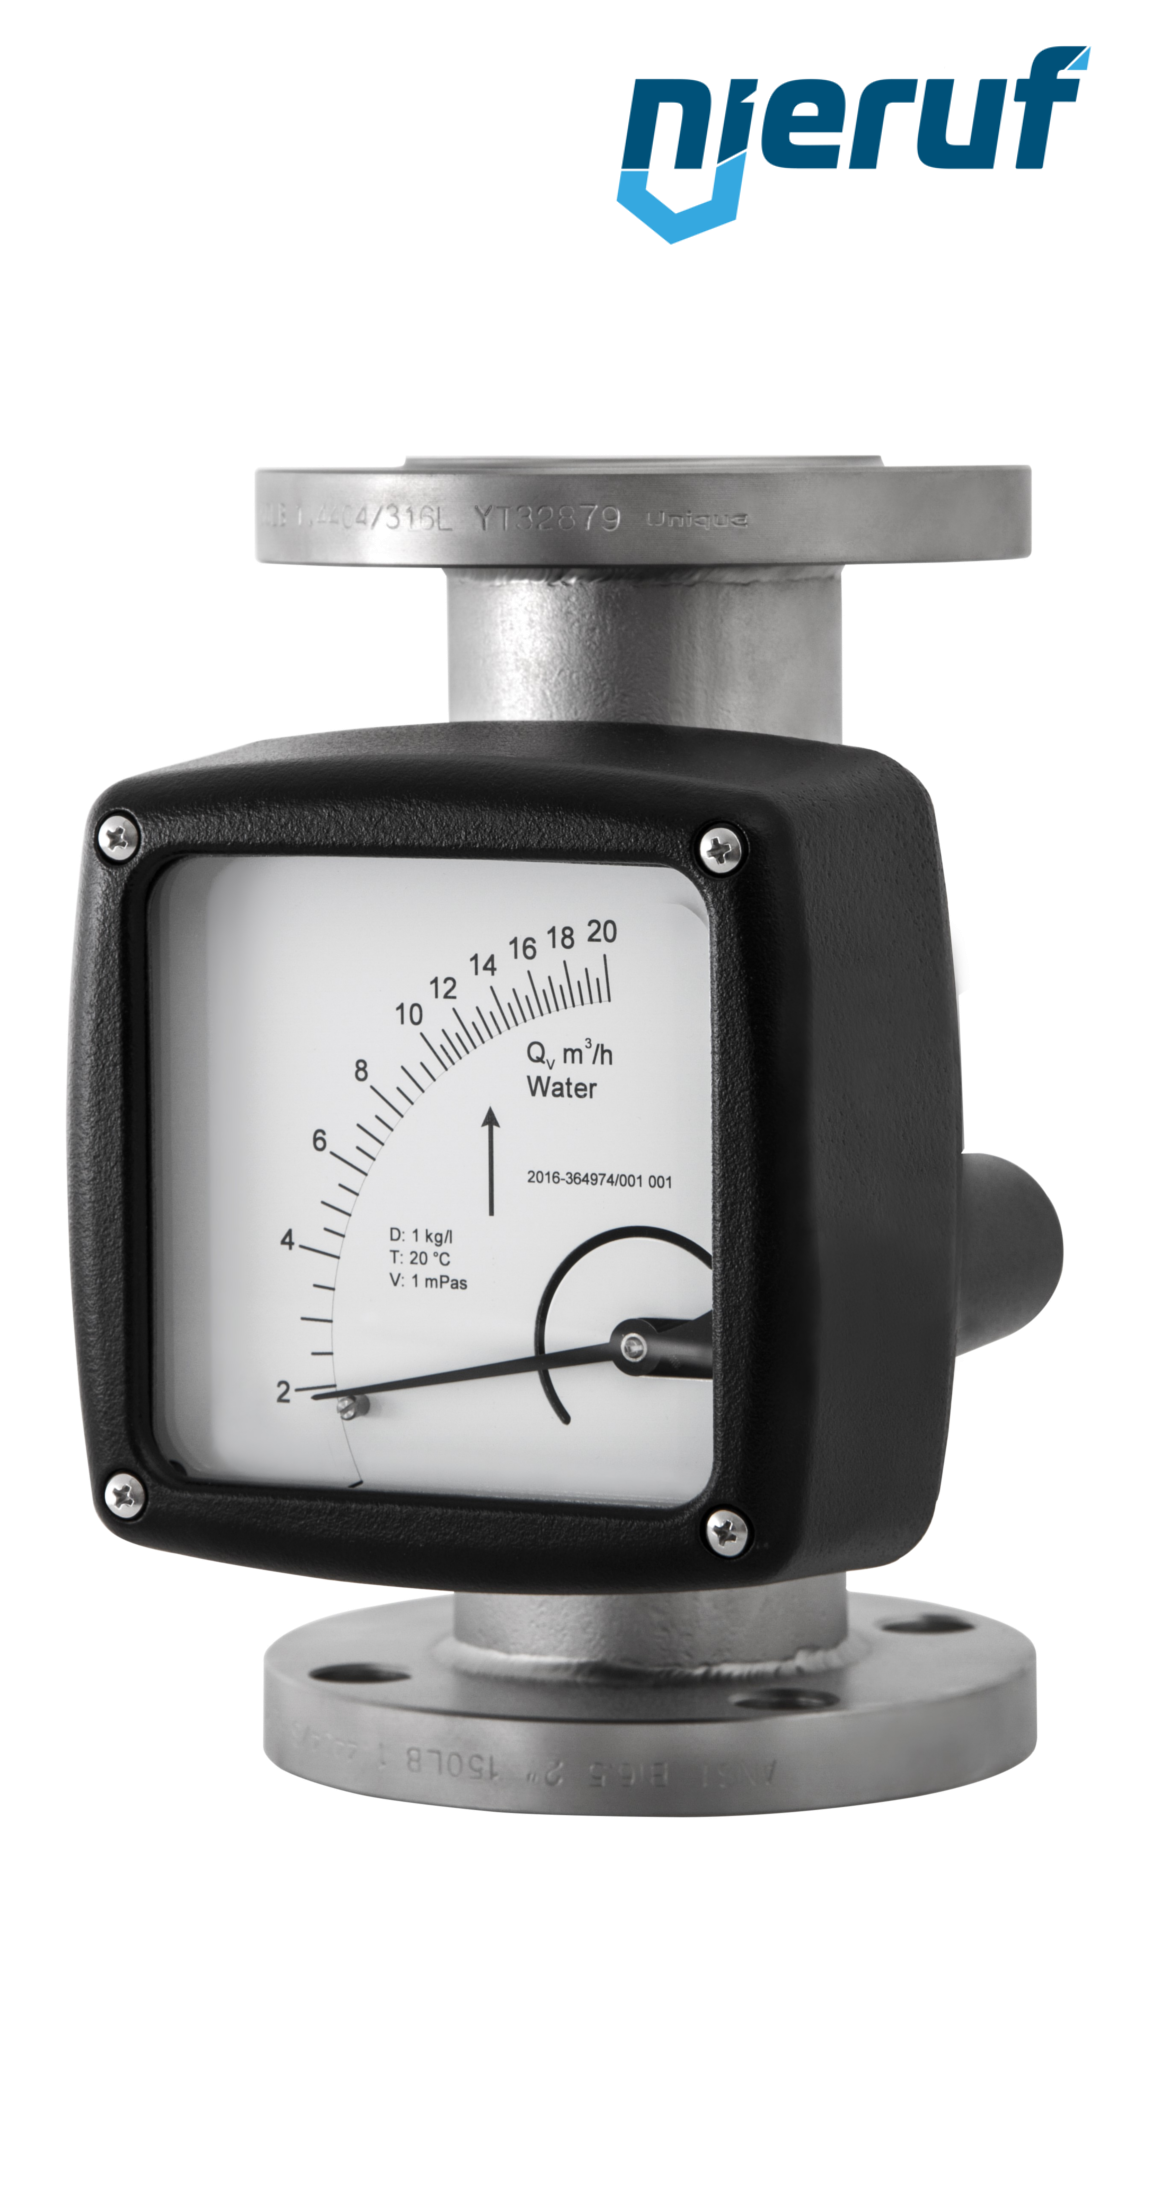 misuratore di portata / flussometro flangiato DN50-attacco 55,0 - 550,0 m3/h tubo DN50 aria